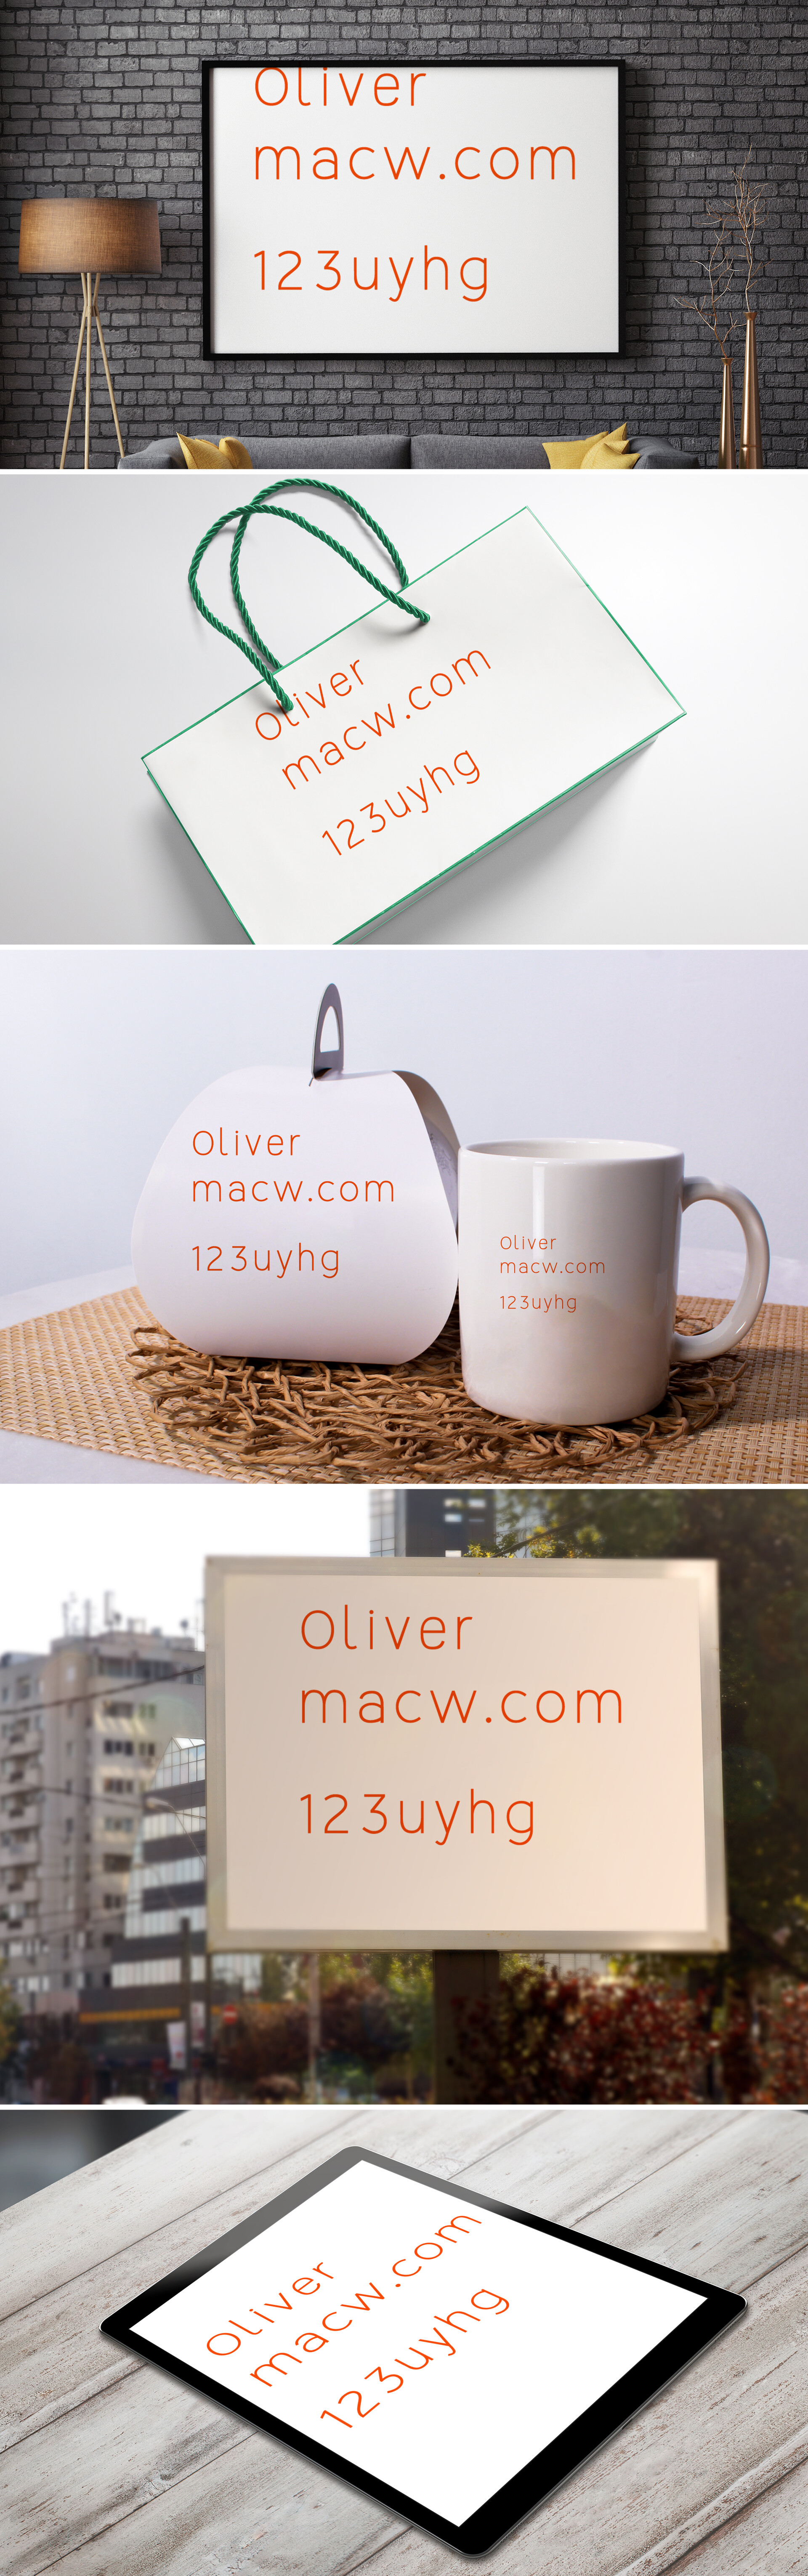 奥利弗现代风格Mac字体包Oliver Modern Typeface WebFont